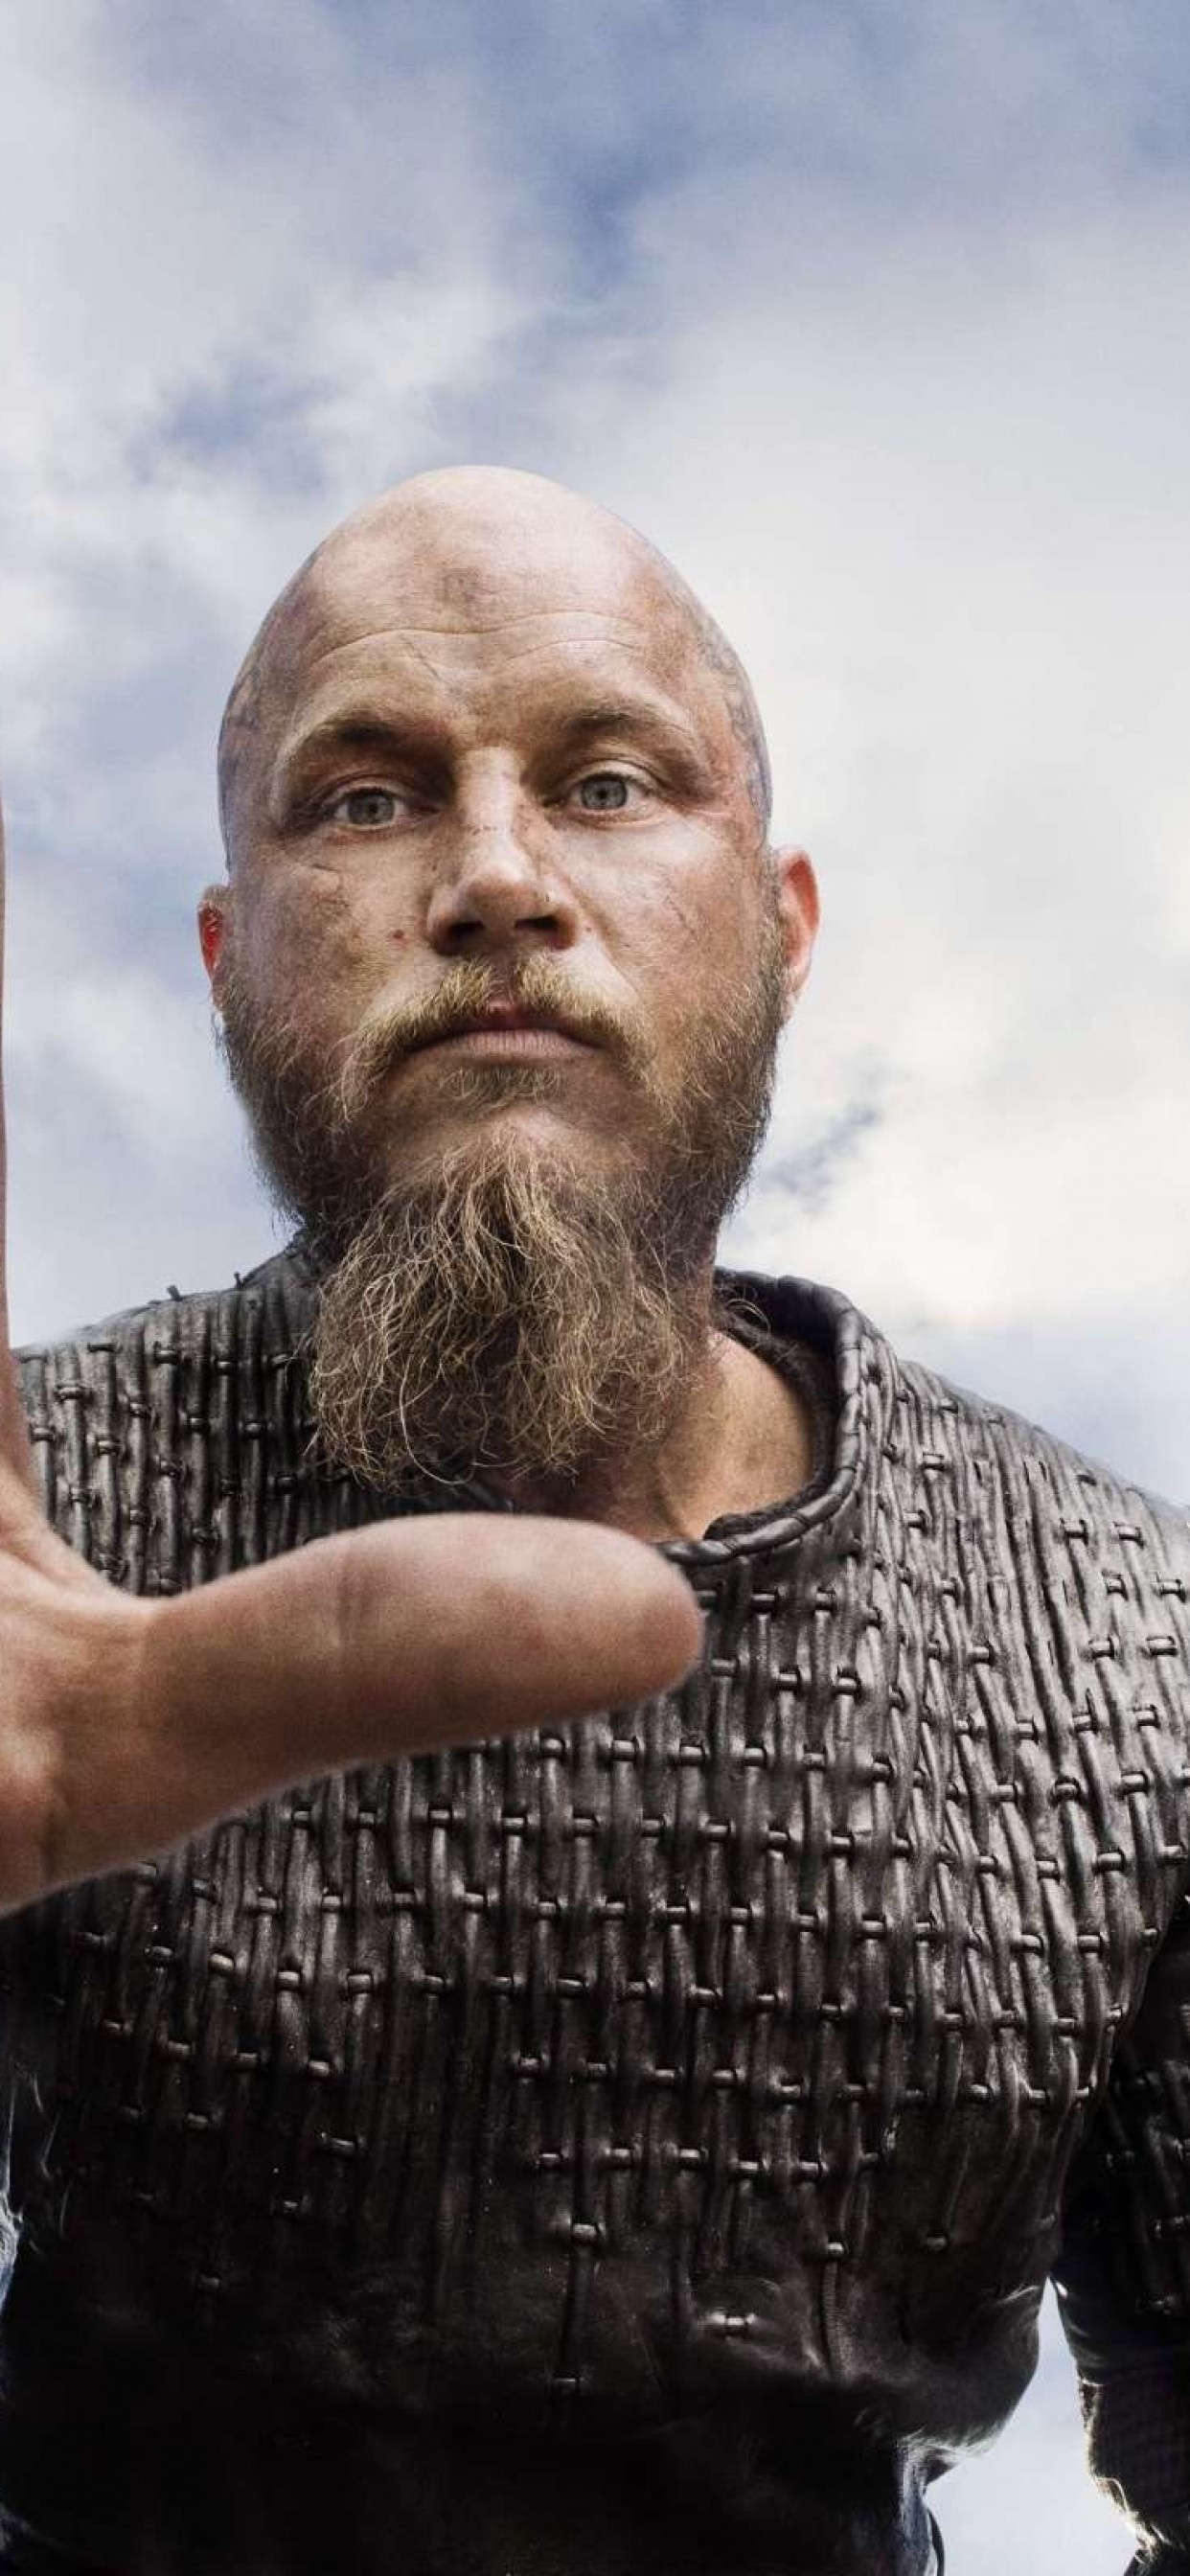 Iphone Xs Max Vikings Wallpaper - Ragnar Lodbrok - HD Wallpaper 